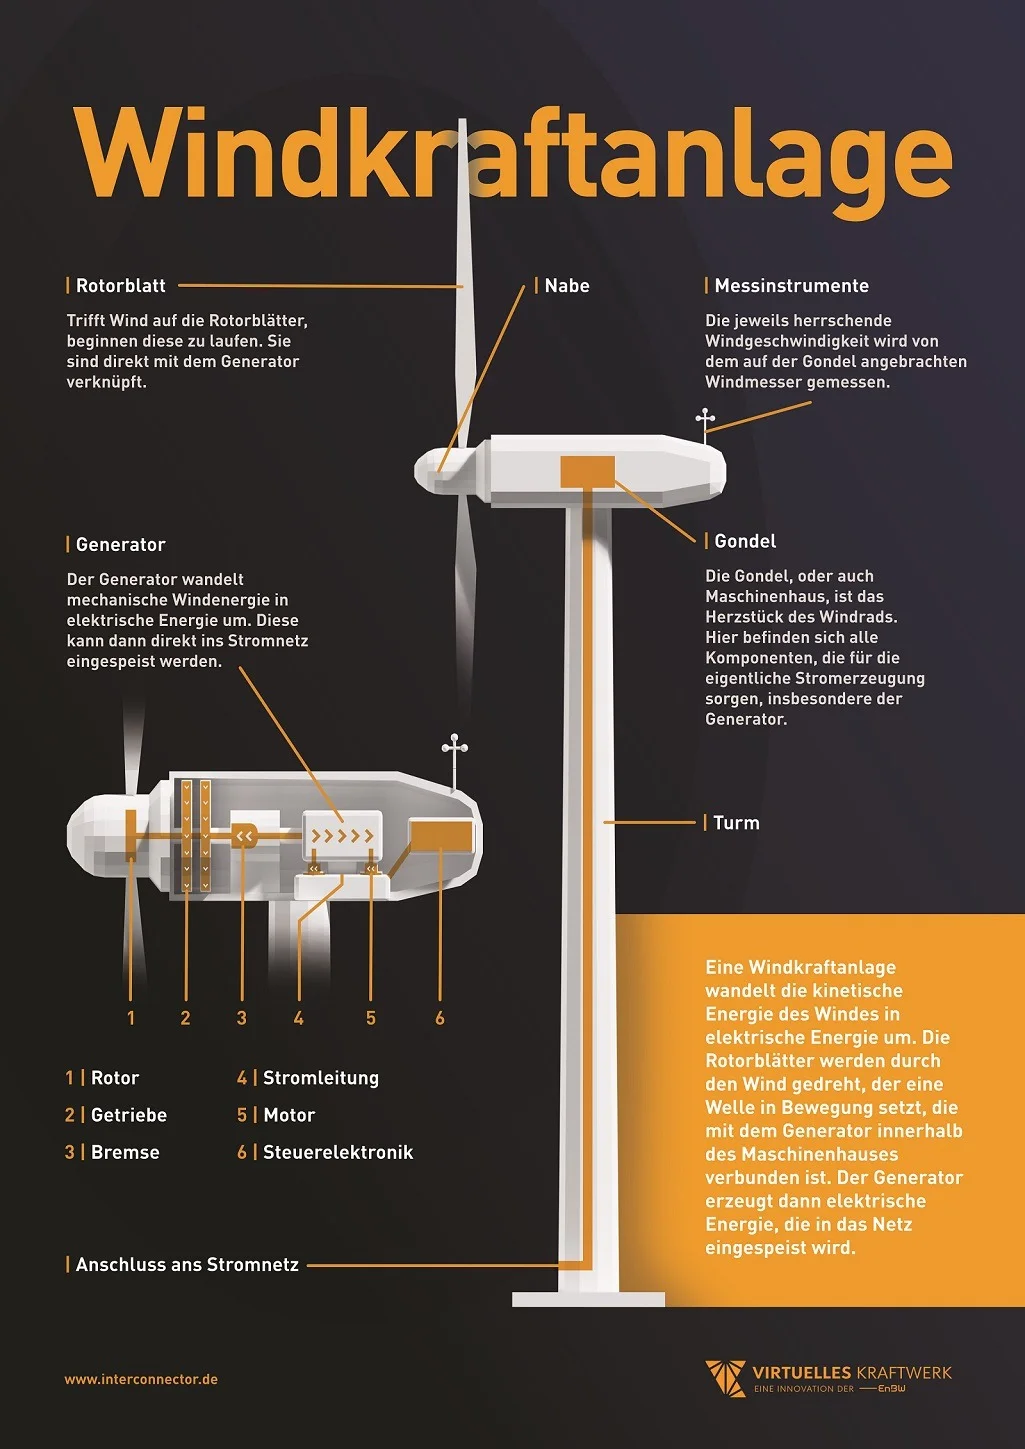 Windkraftanlage Skizze: So funktioniert eine Windkraftanlage